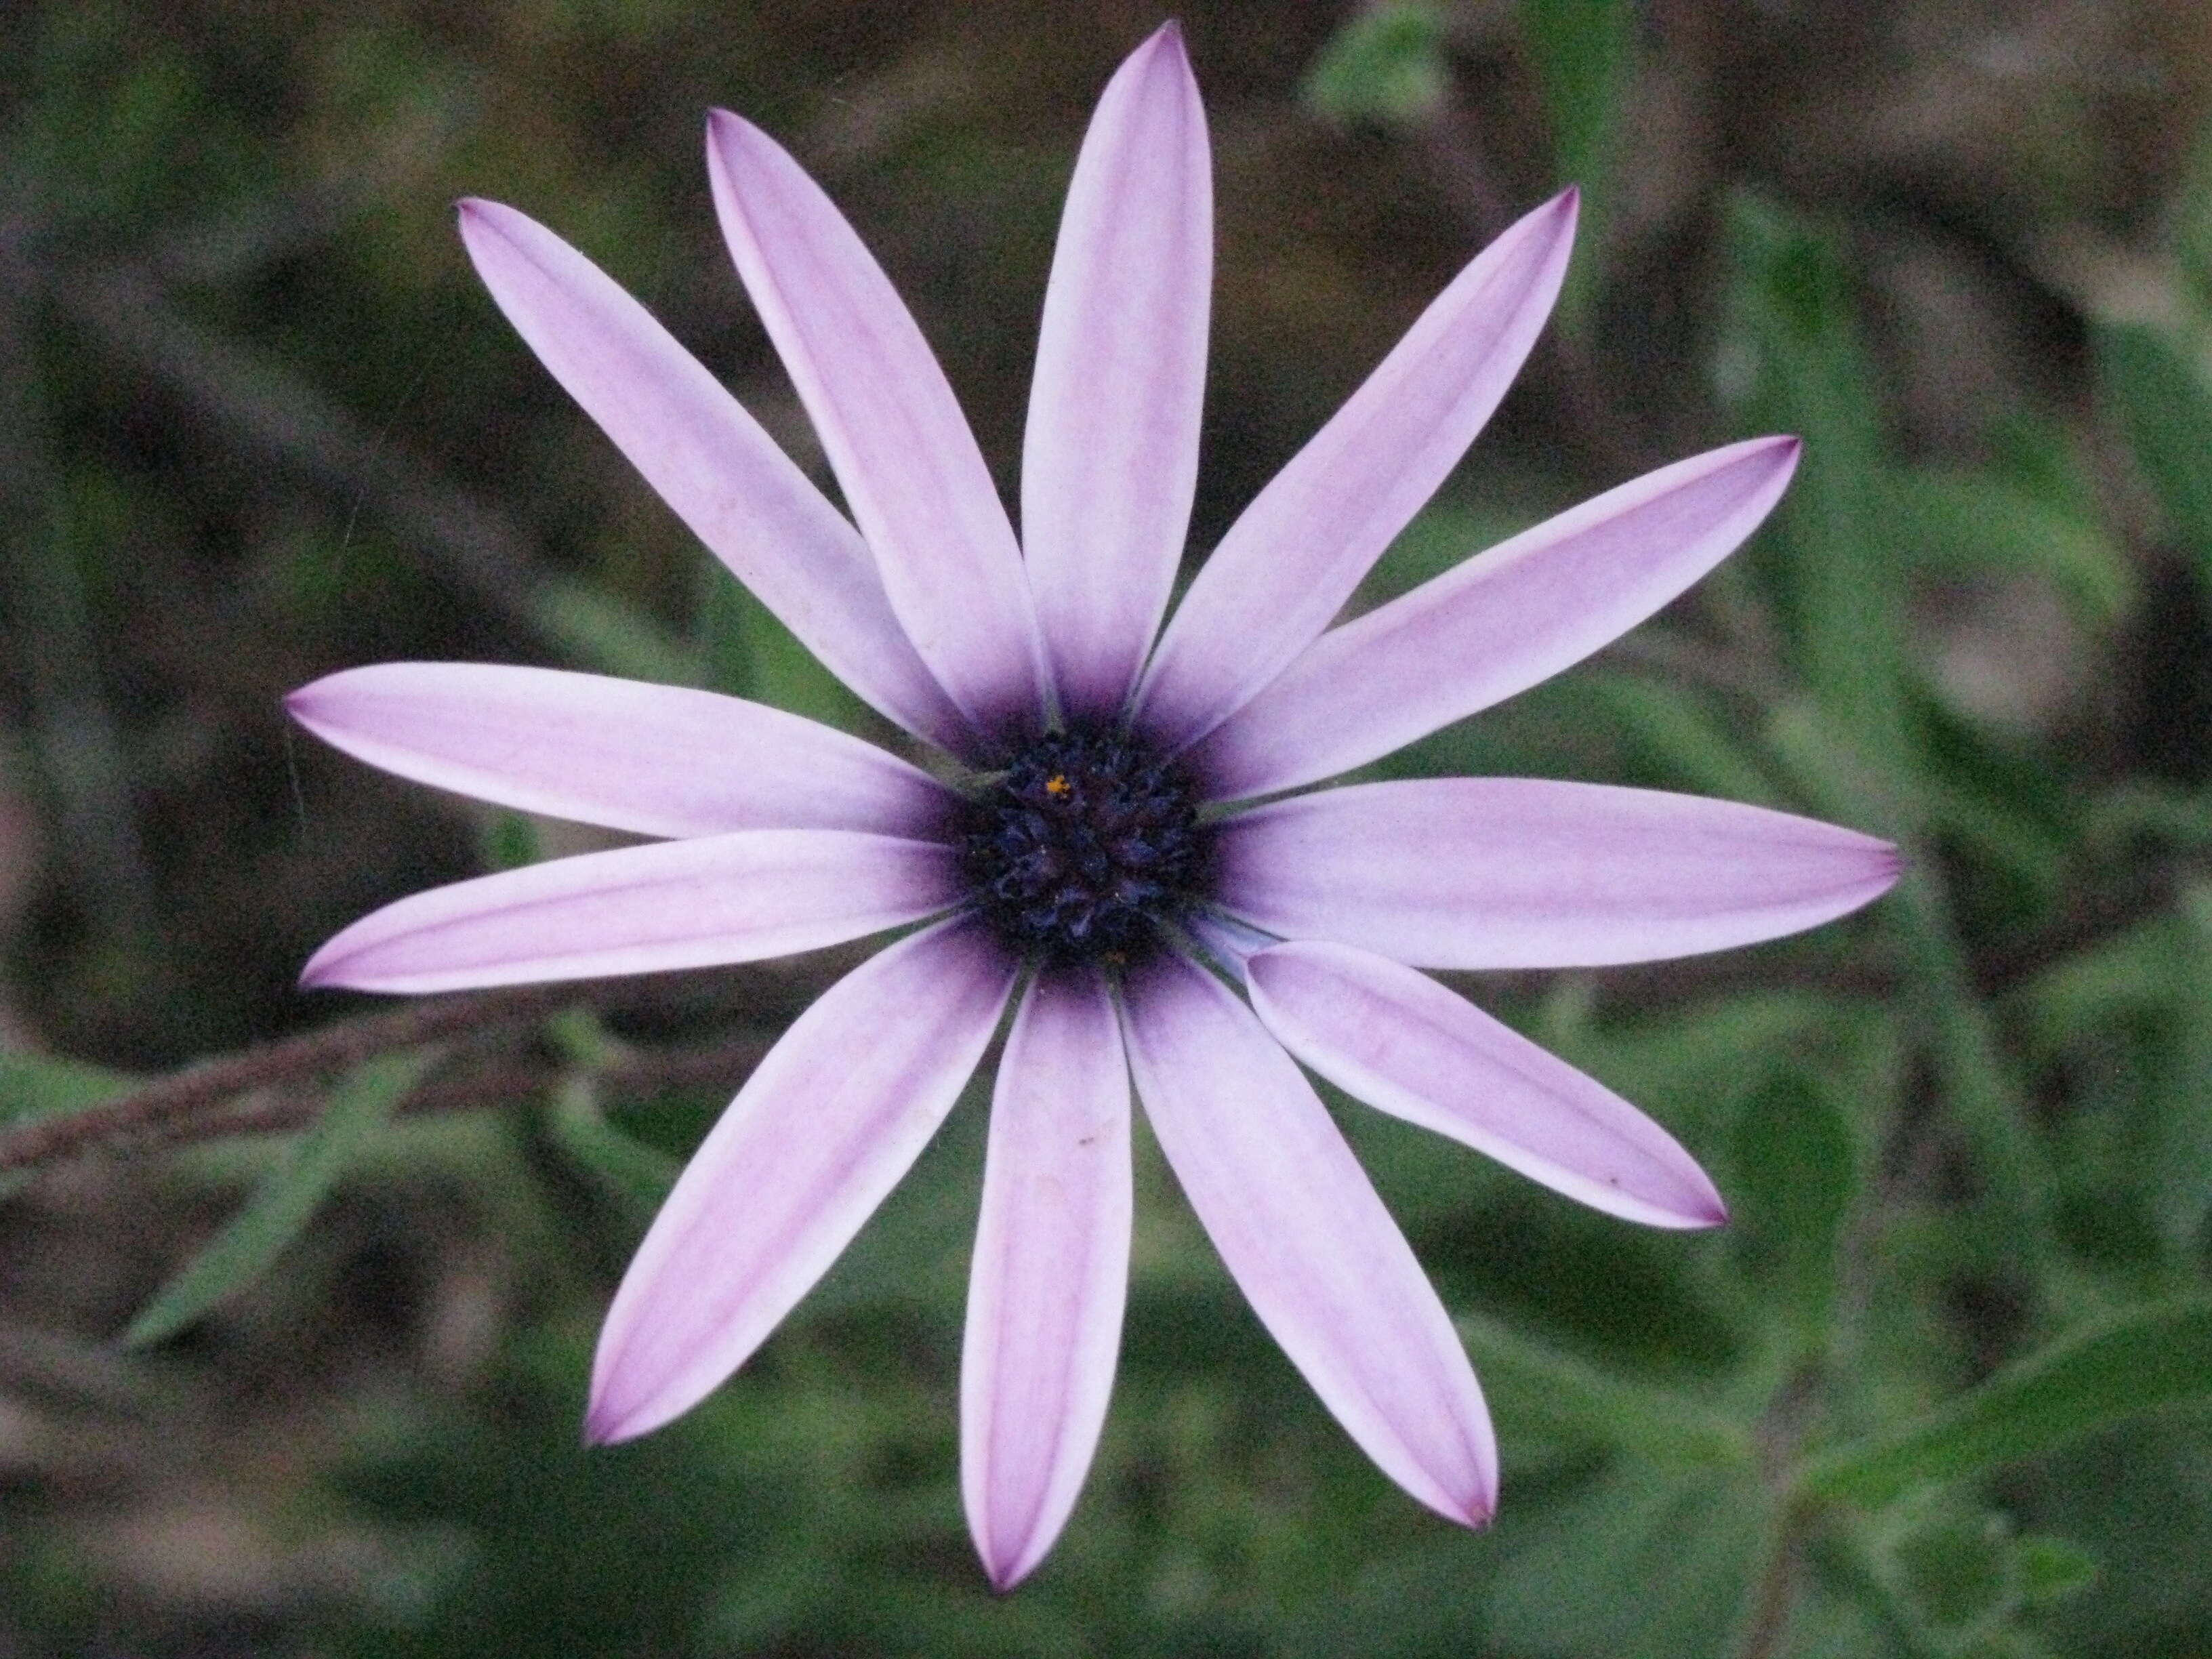 Image of daisybush